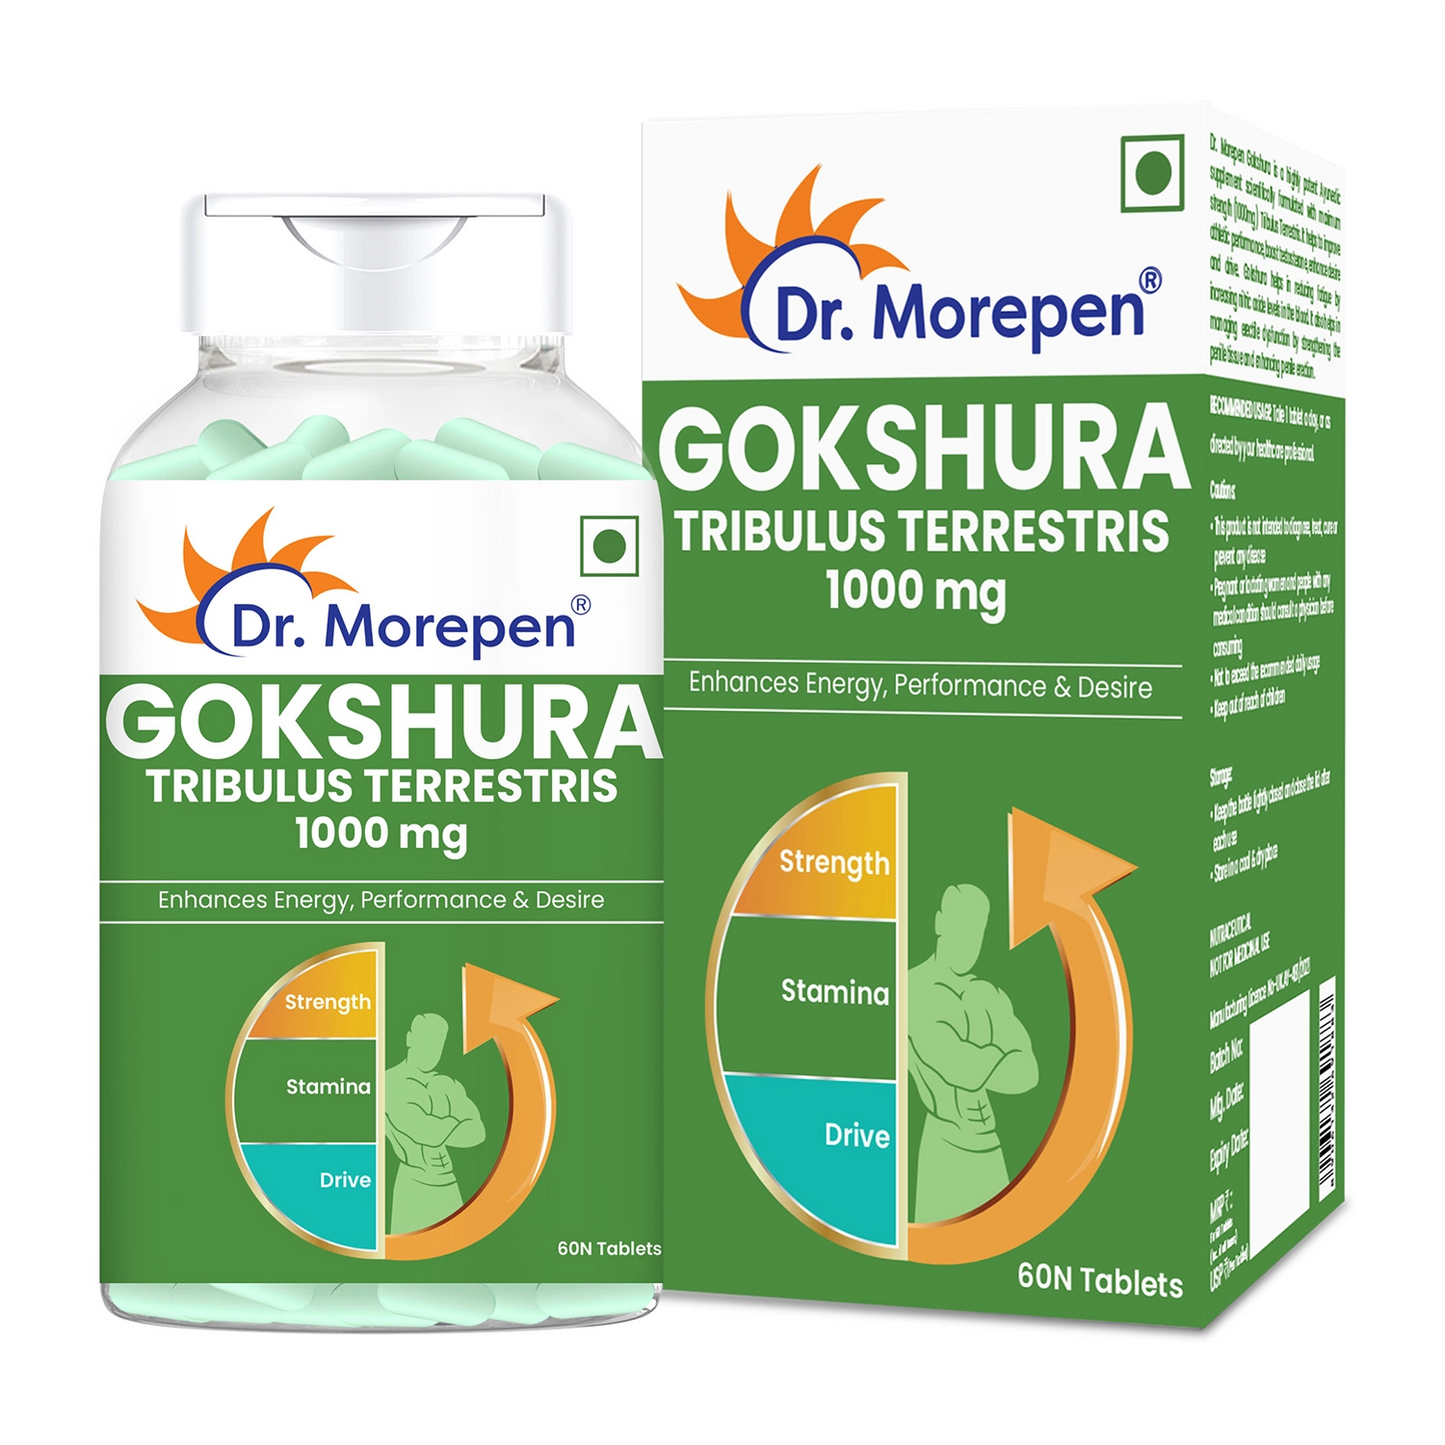 Gokshura & Testo Boost -Performance Combo Pack